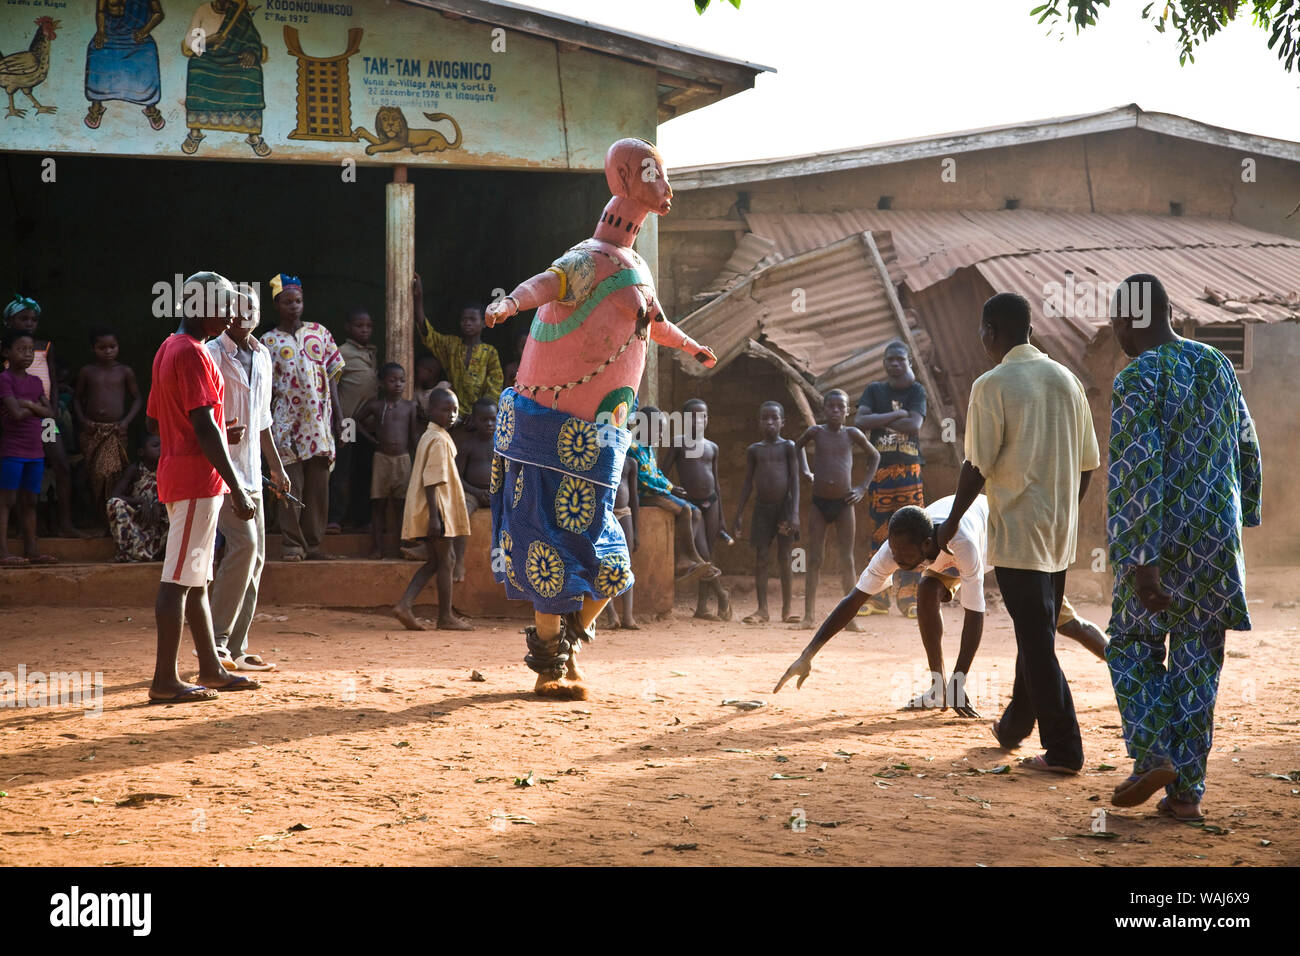 L'Afrique de l'ouest, au Bénin. Les hommes et les enfants regarder les spectacles de danse de masque Gelede. Banque D'Images